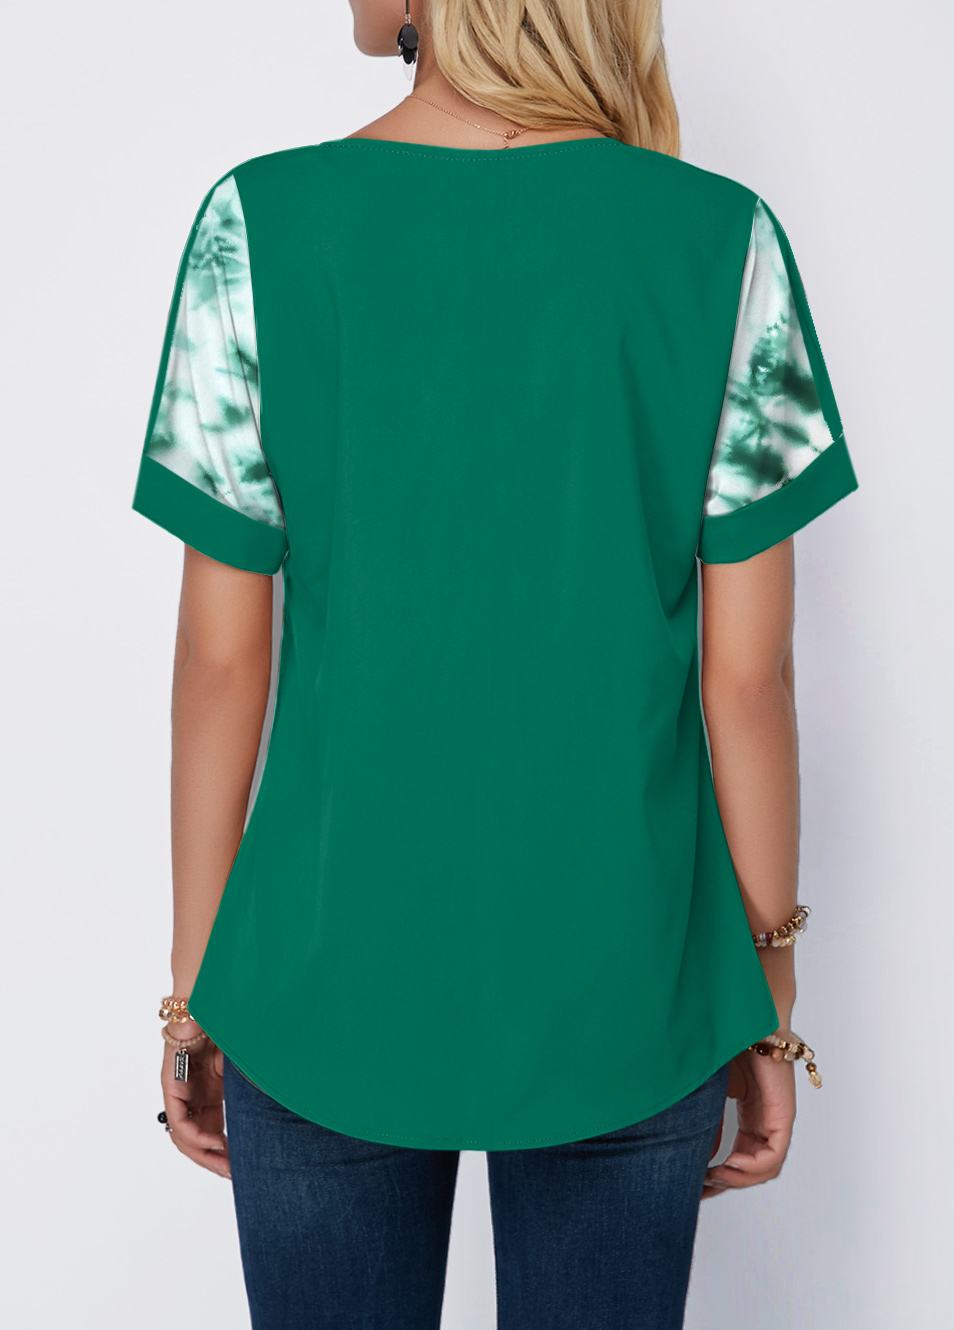 Patricks Day Tie Dye Print Green T Shirt